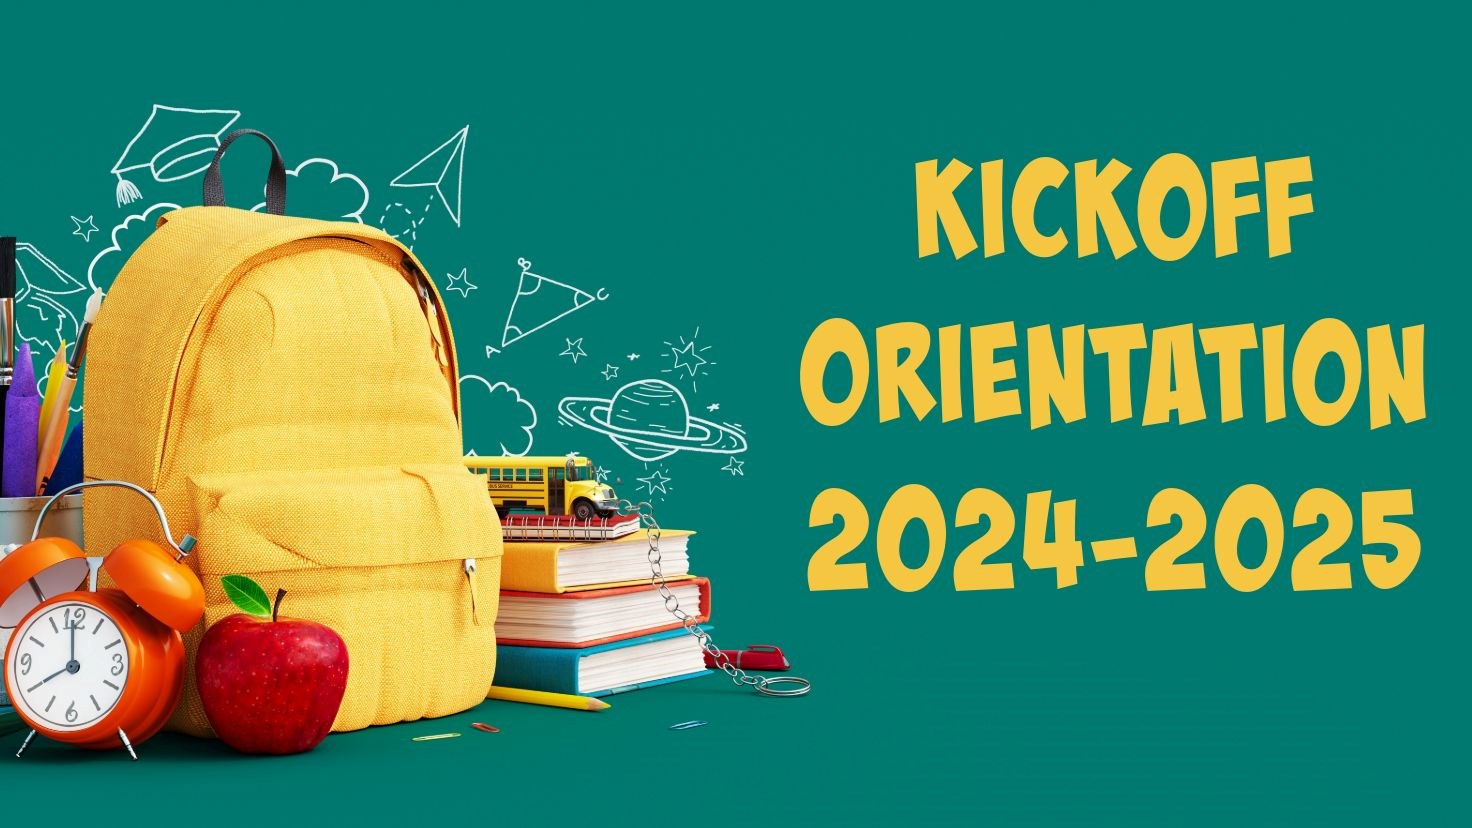 Kickoff Orientation 2024-2025